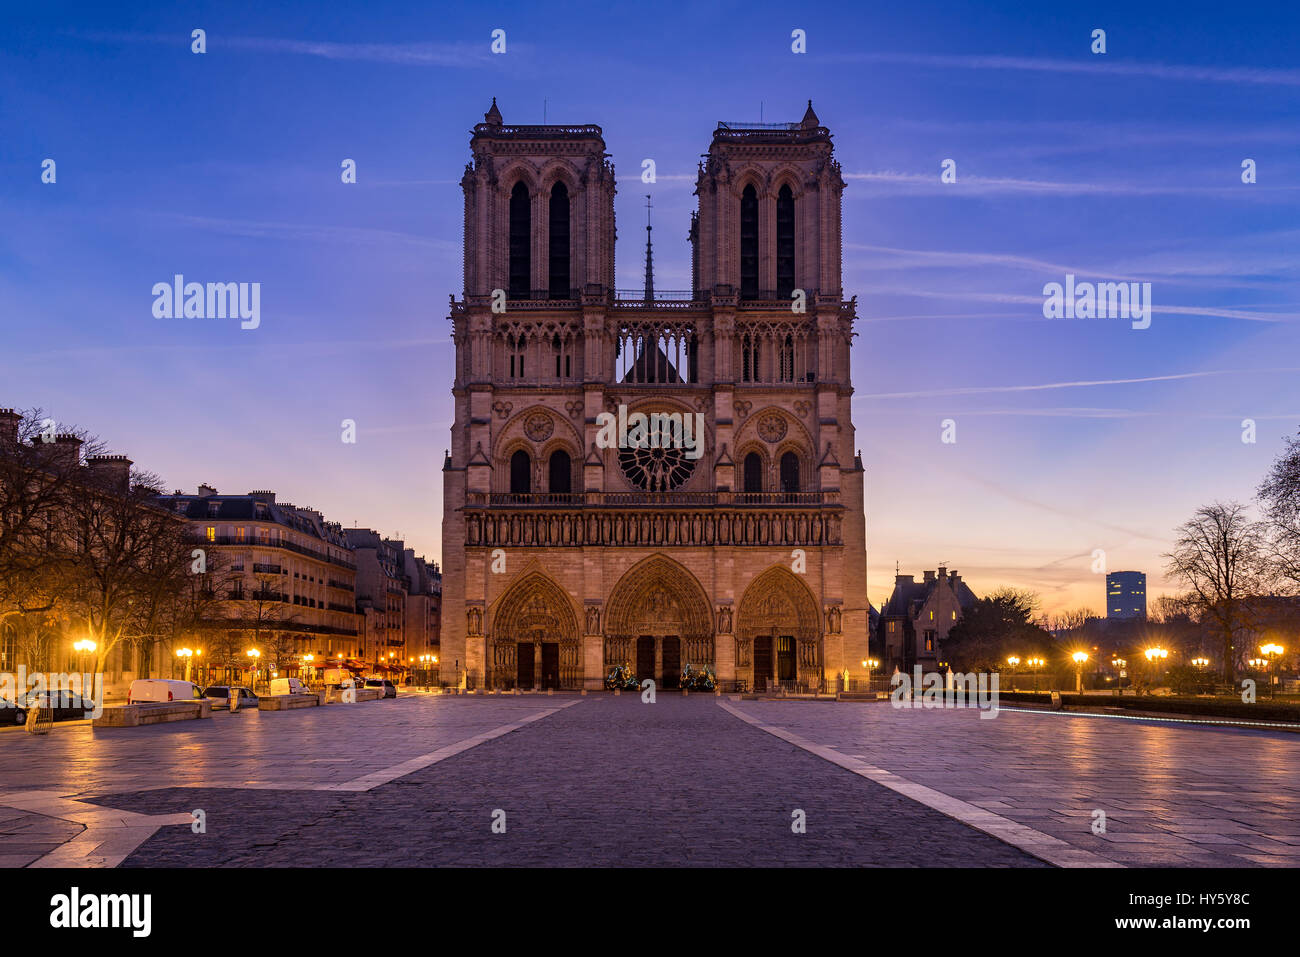 La cathédrale Notre Dame de Paris au lever du soleil. Ile de la Cite, Parvis Notre Dame (Place Jean-Paul II), 4e arrondissement, Paris, France Banque D'Images